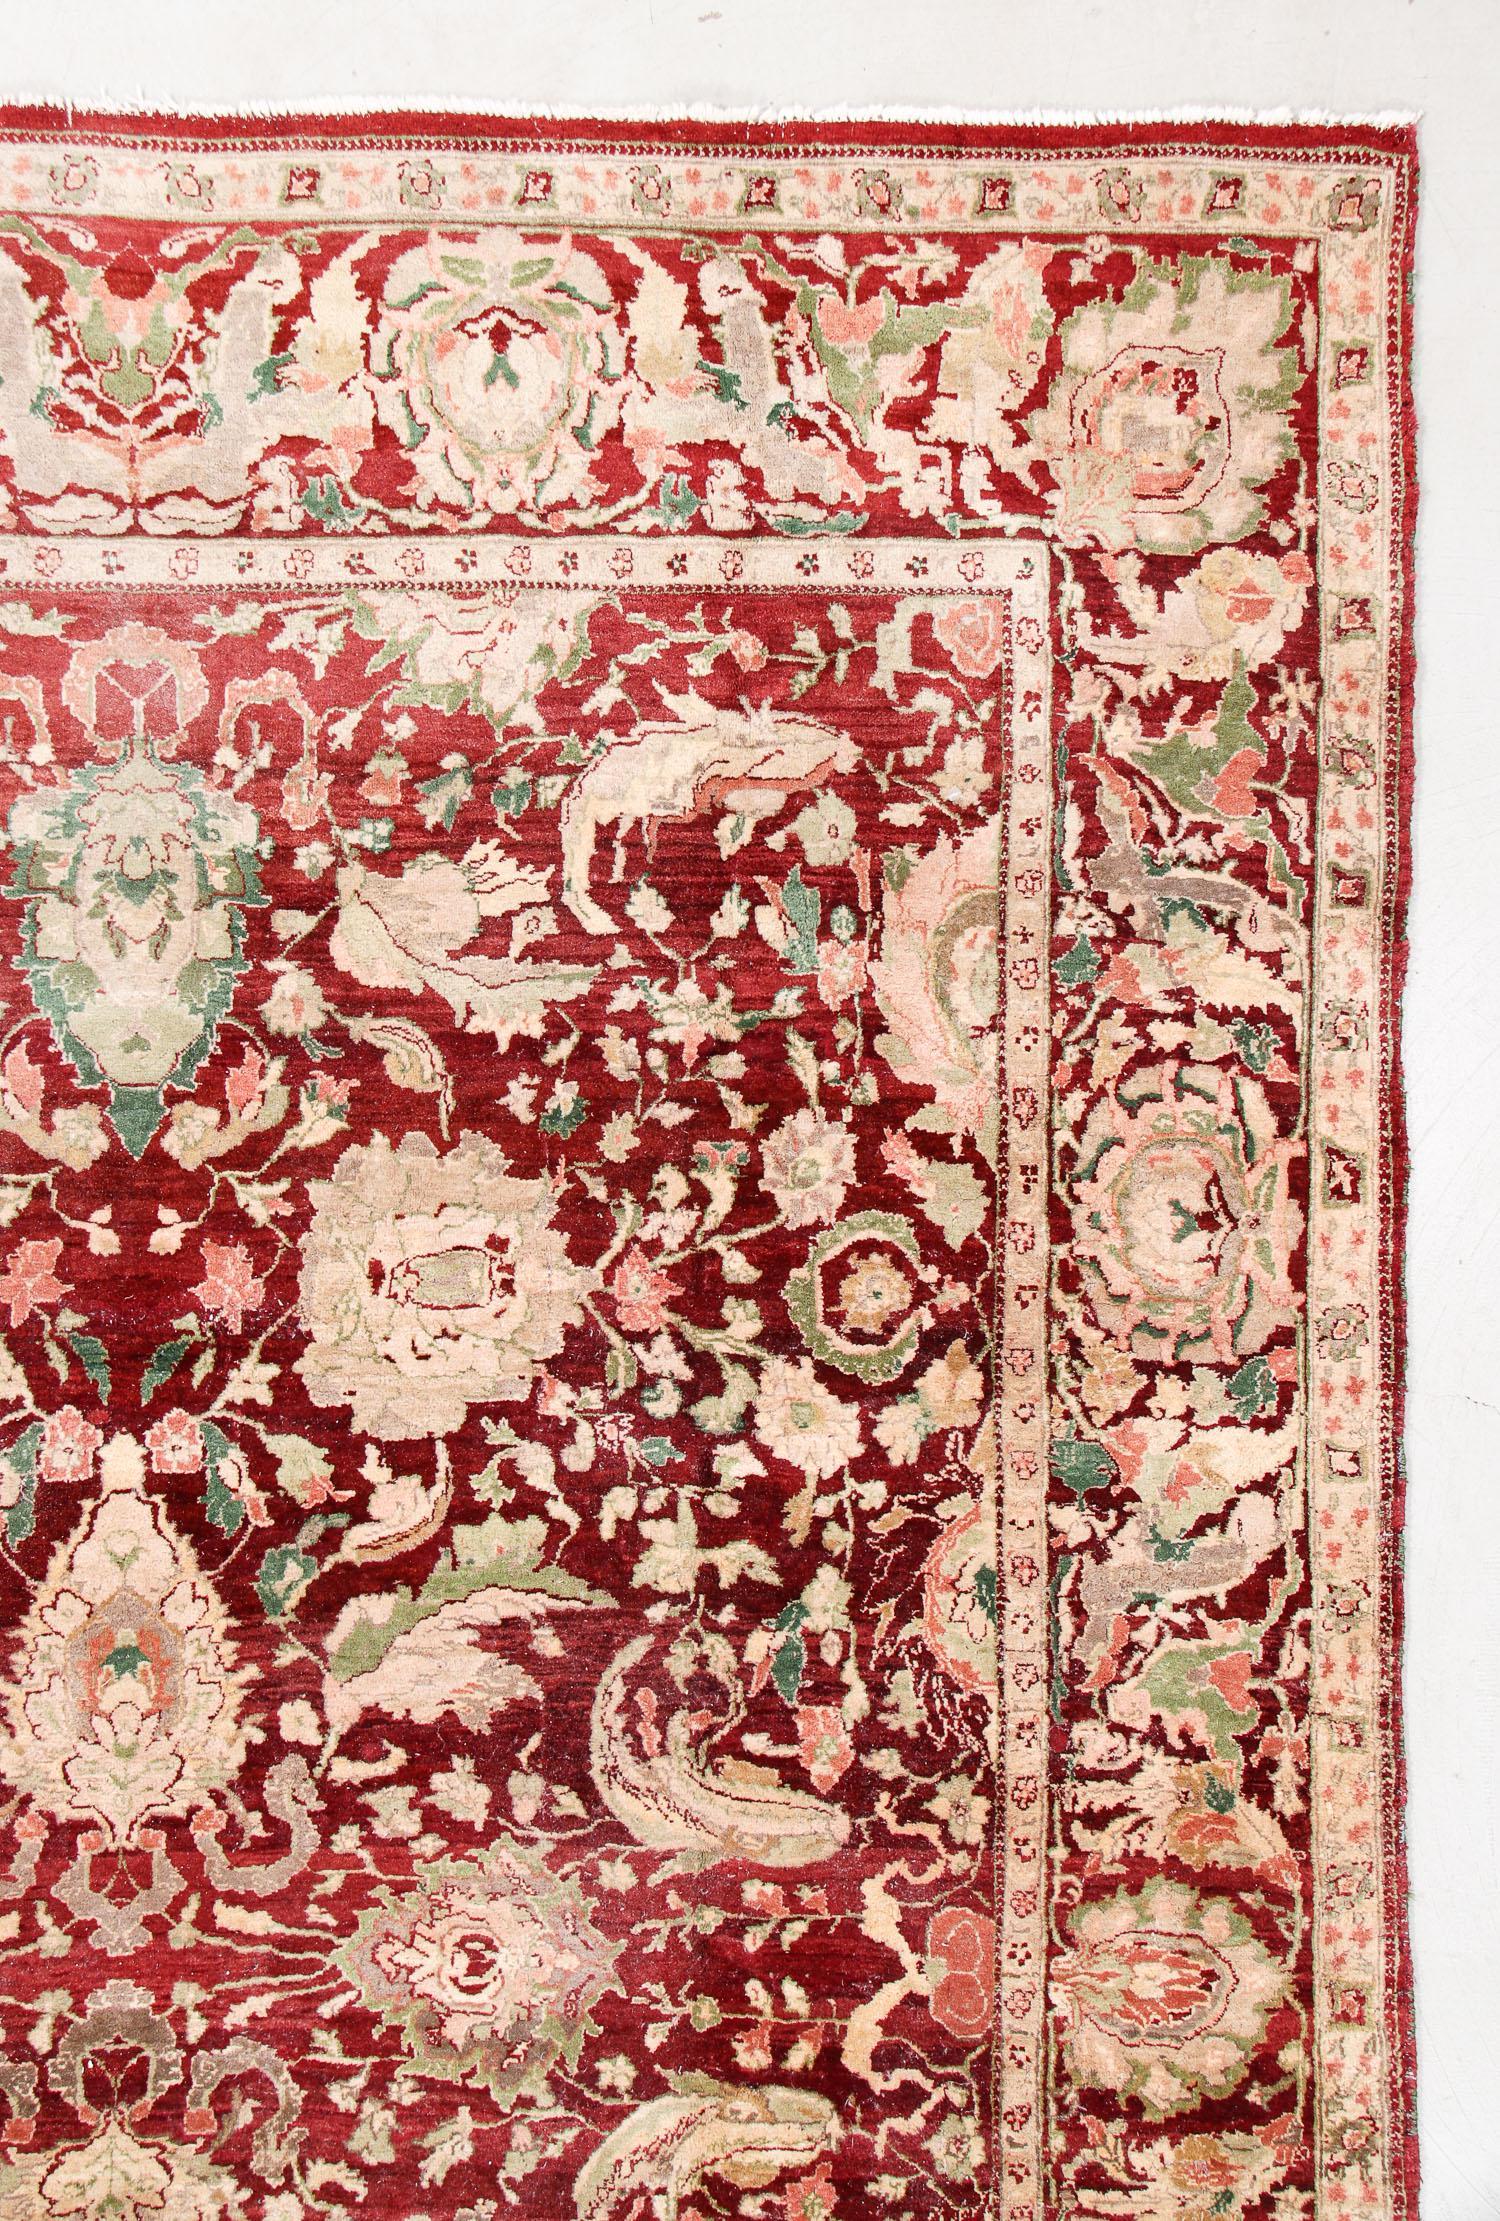 Agra-Teppiche mit burgunderrotem Grund zählen seit jeher zu den raffiniertesten und elegantesten Dekorationsteppichen. Sie wurden während der Kolonialzeit von britischen Adeligen in Auftrag gegeben, um ihre Schlösser und Paläste zu schmücken. Dieses